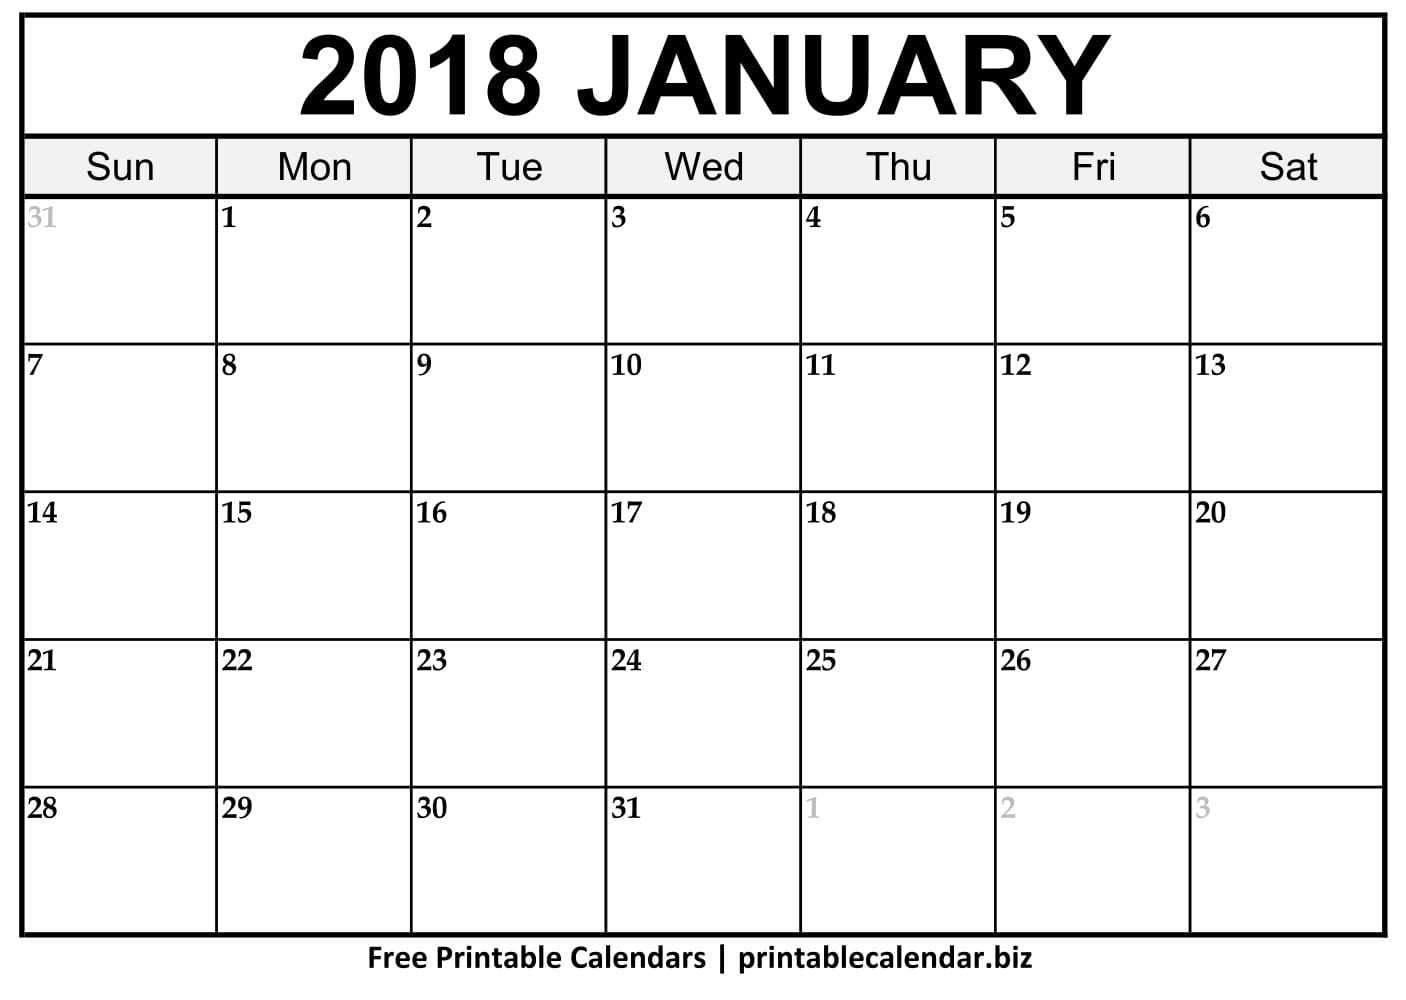 2019 Printable Calendar Templates - Printablecalendar.biz Template For A Printable Calendar